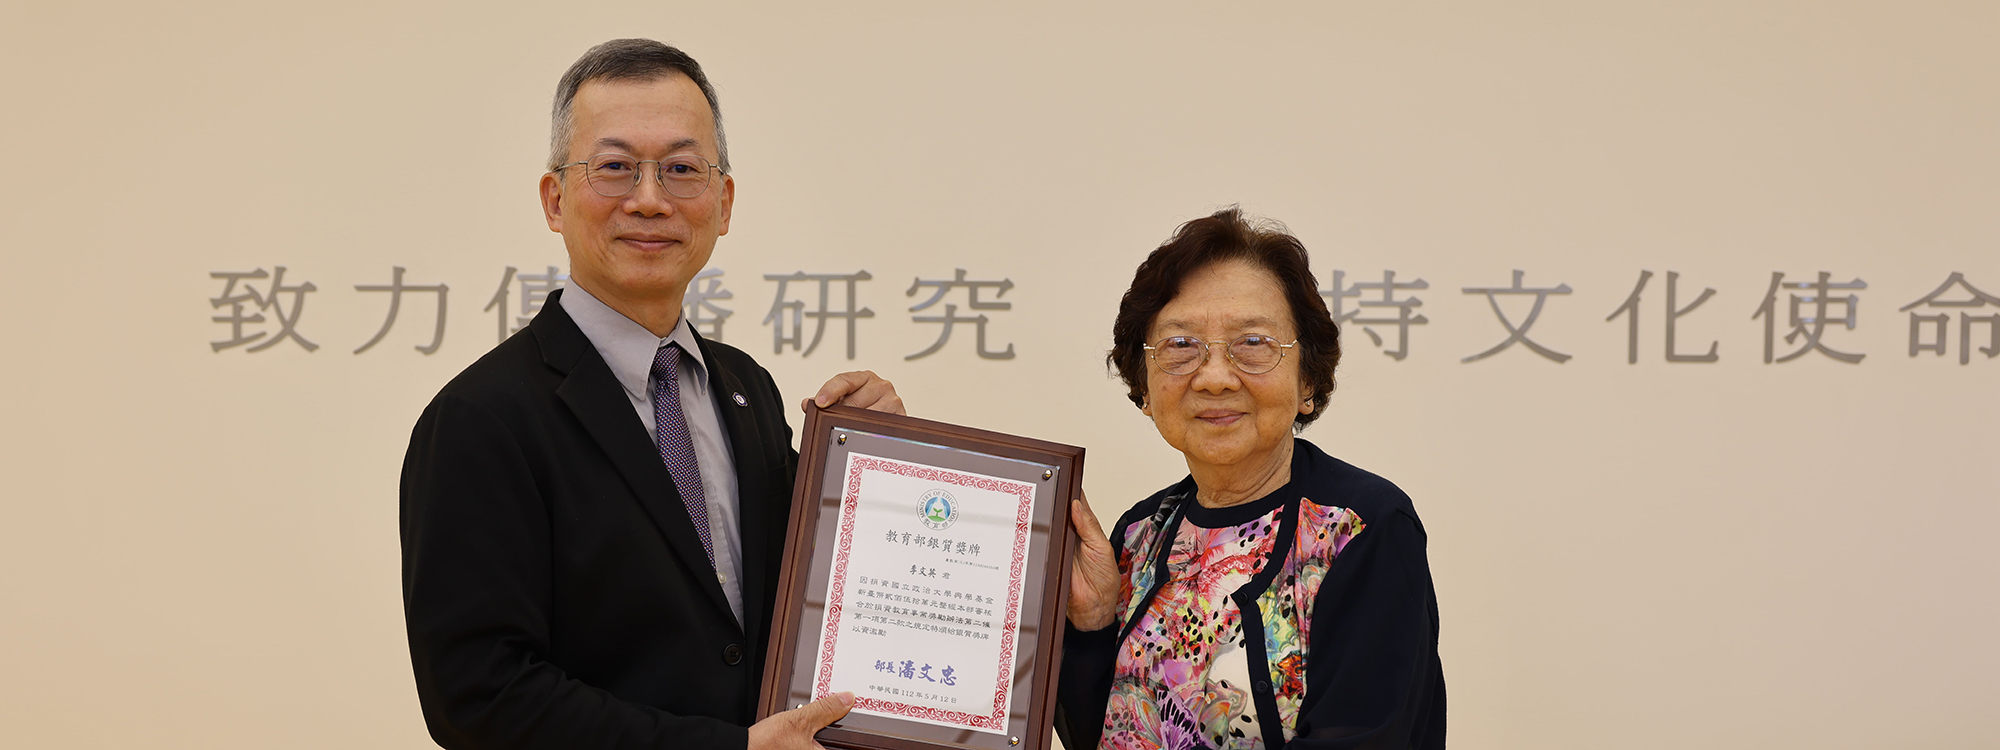 李蔡彥校長致贈感謝狀及教育部頒發的銀質獎給李文英女士